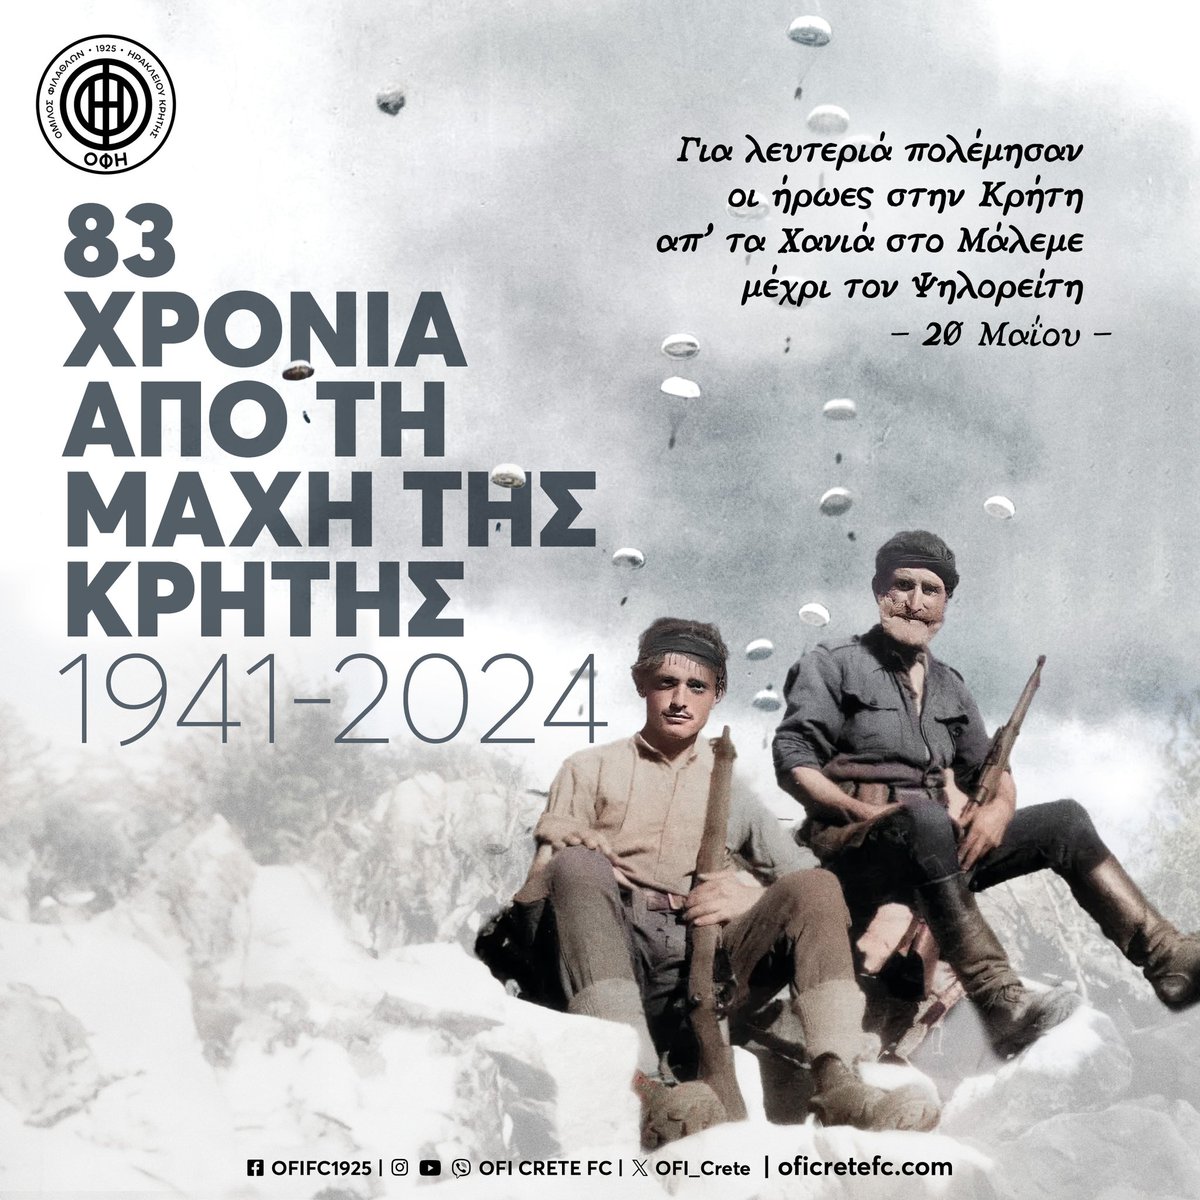 'Γιατί παραξενεύεσαι; Εμείς ξέραμε πως γράφαμε ιστορία!' 

~

83 χρόνια από την Μάχη της Κρήτης

#oficrete #oficretefc #ofifc #history #historical #battle #ww #battleofcrete #war #crete #greece